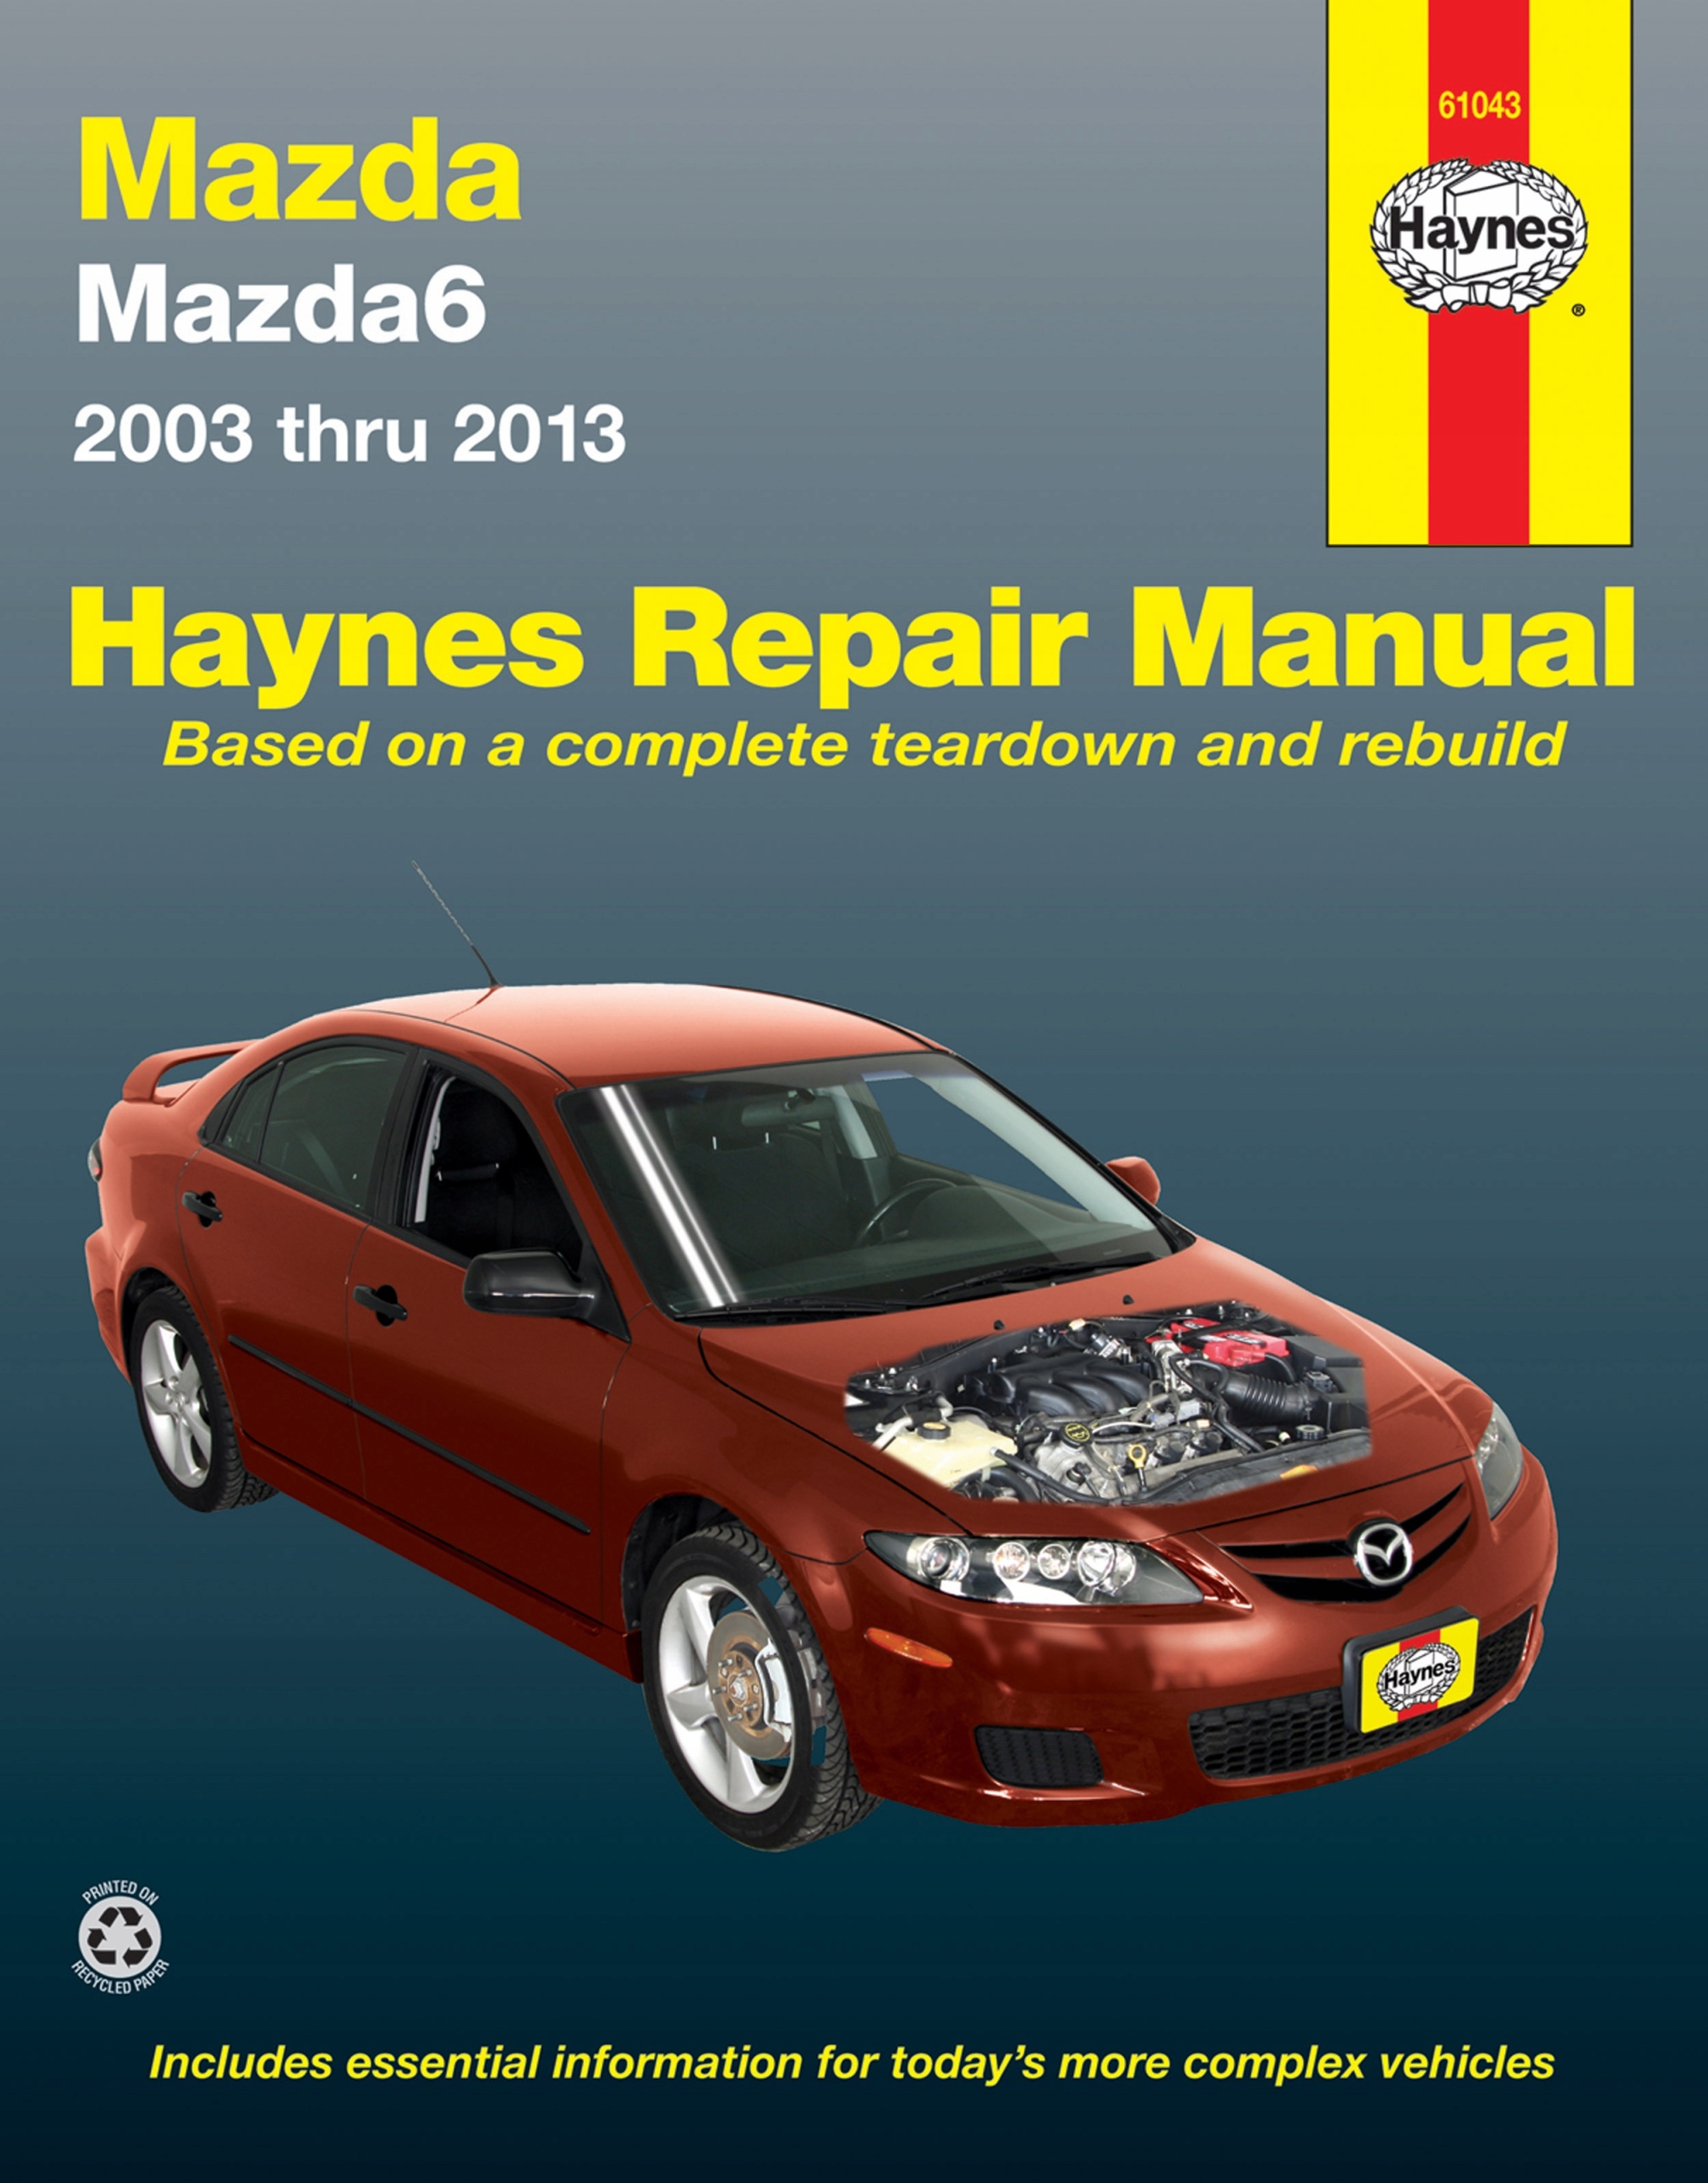 Руководства по эксплуатации, обслуживанию и ремонту Mazda 6